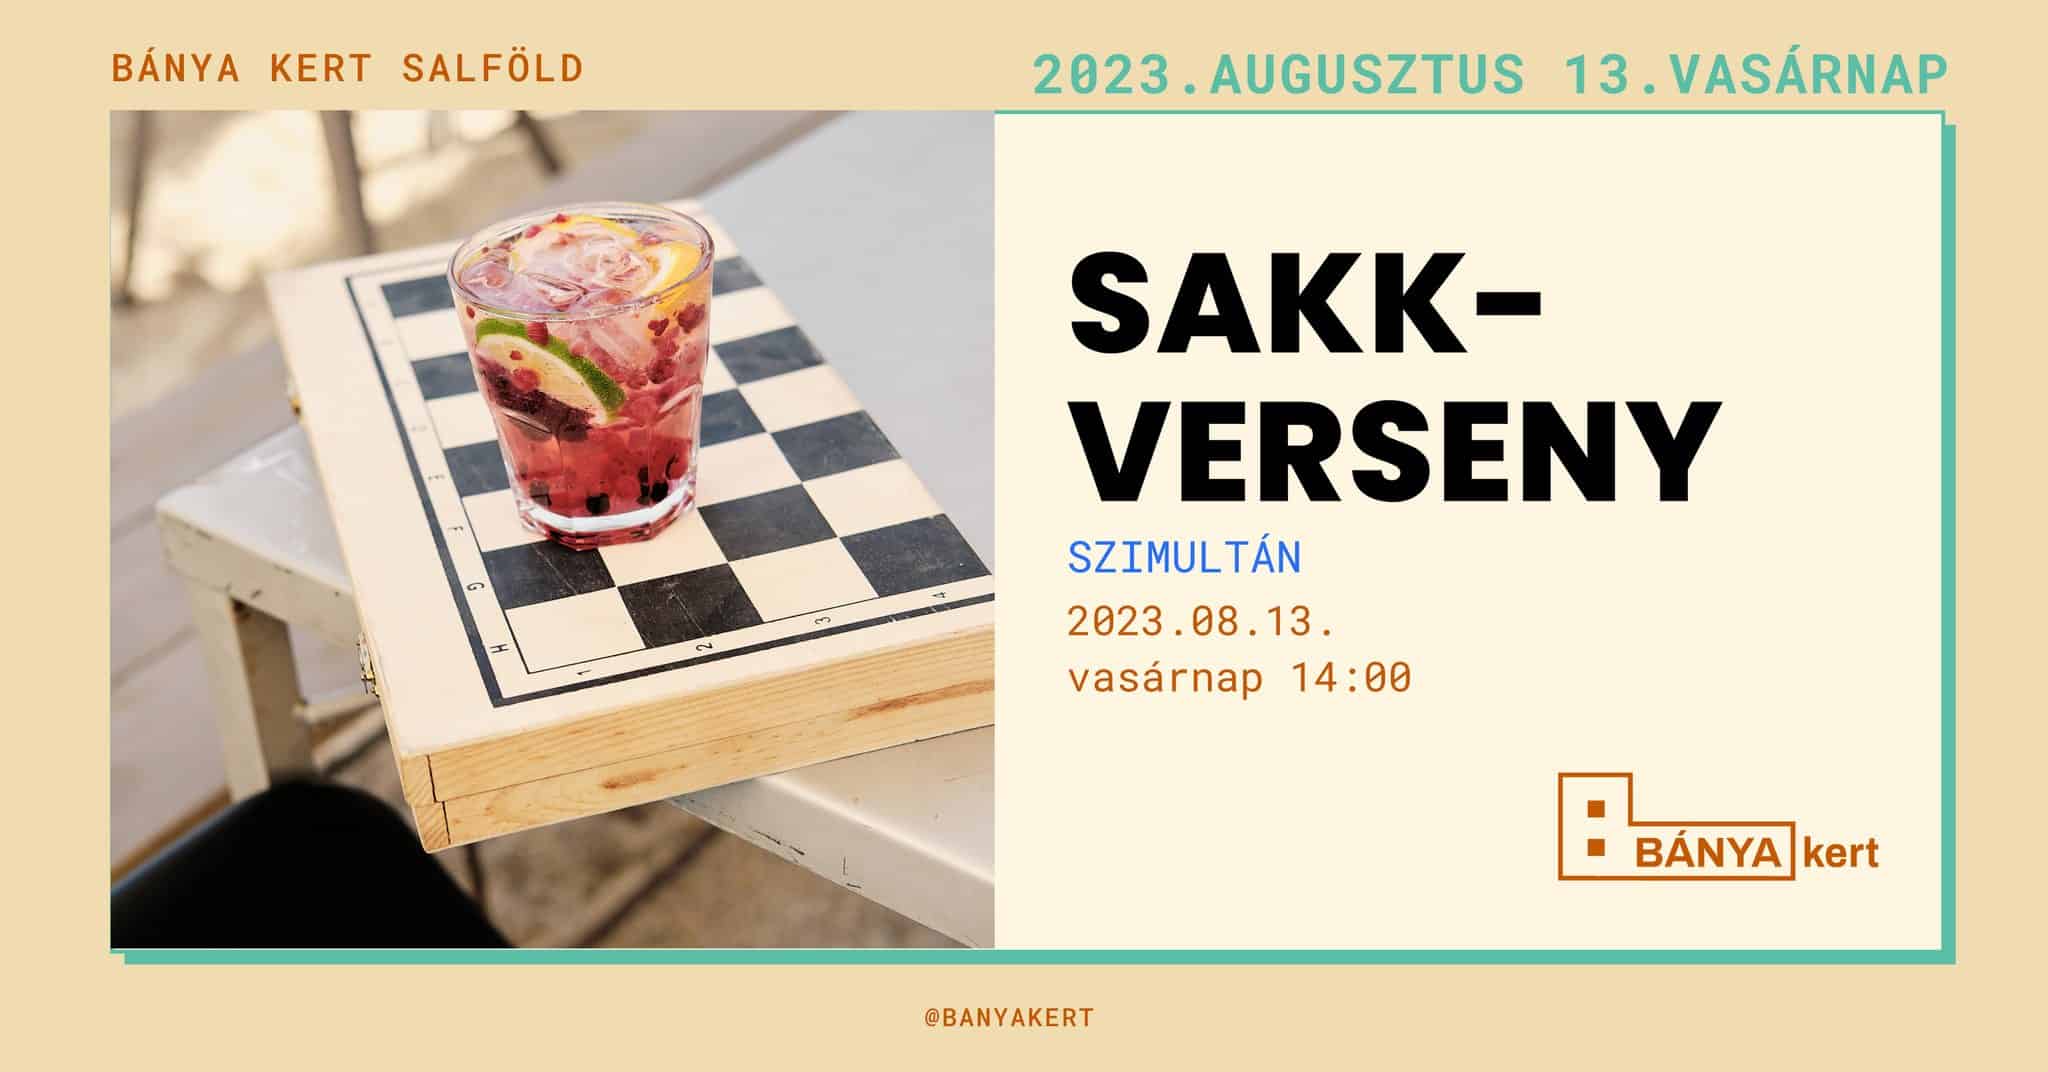 Sakk-verseny-2023-08-13